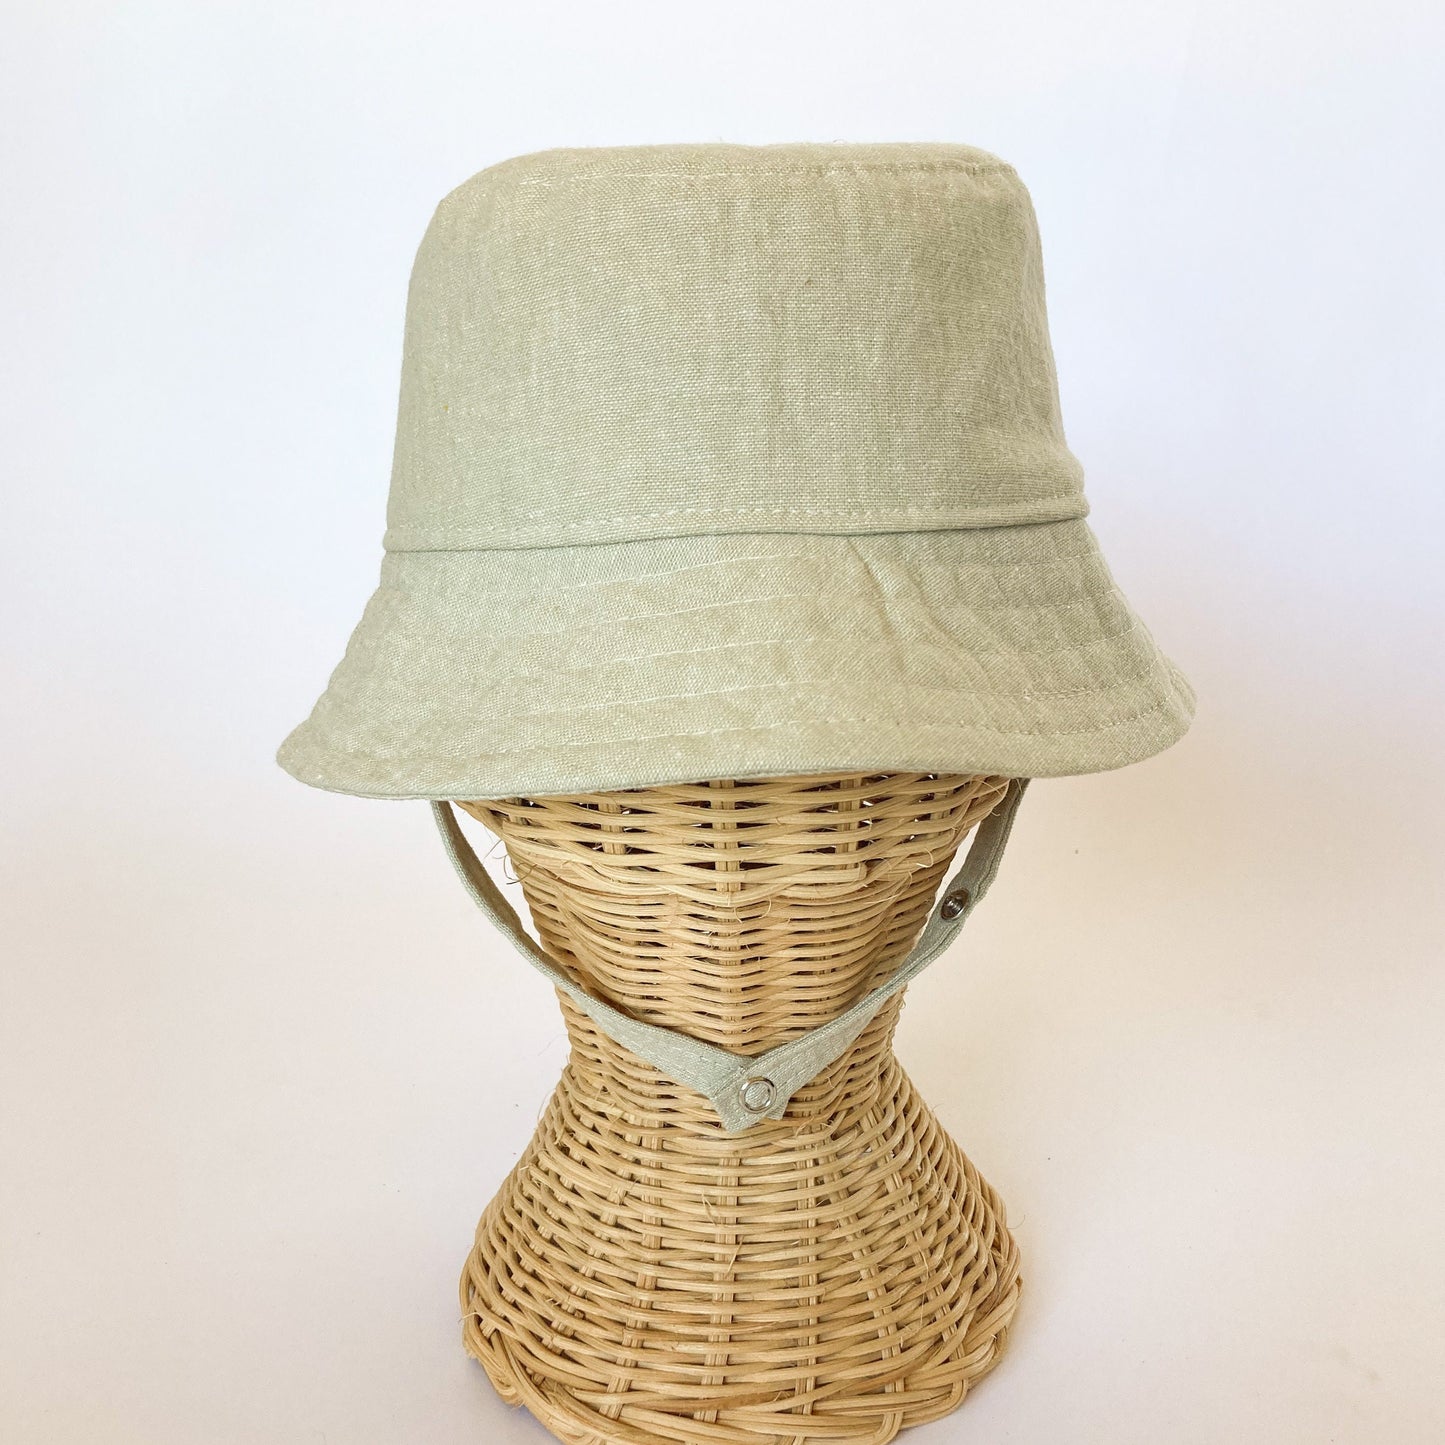 Kids Bucket Hat, Brimmed Baby Hat, Toddler Sun Hat, Kids Linen Hat, Beach Baby Gift, Boho Baby Clothes, Baby Sun Hat, Summer Baby Hat